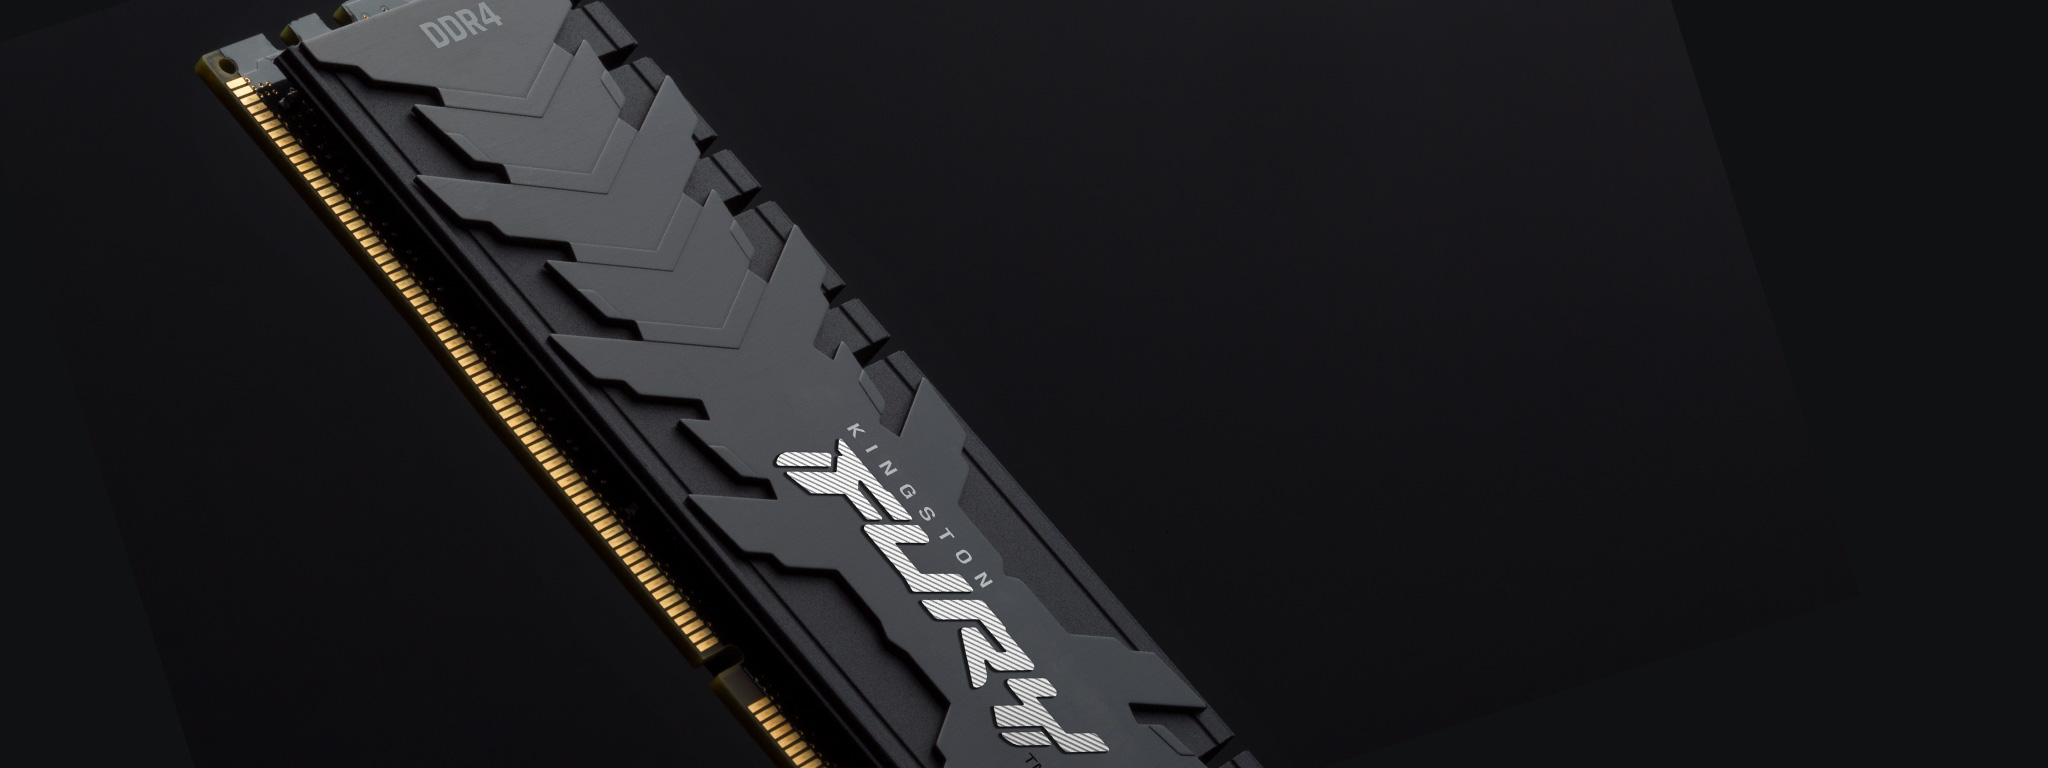 Kingston FURY Renegade DDR4 メモリモジュールの半分が黒一色の背景に表示されている